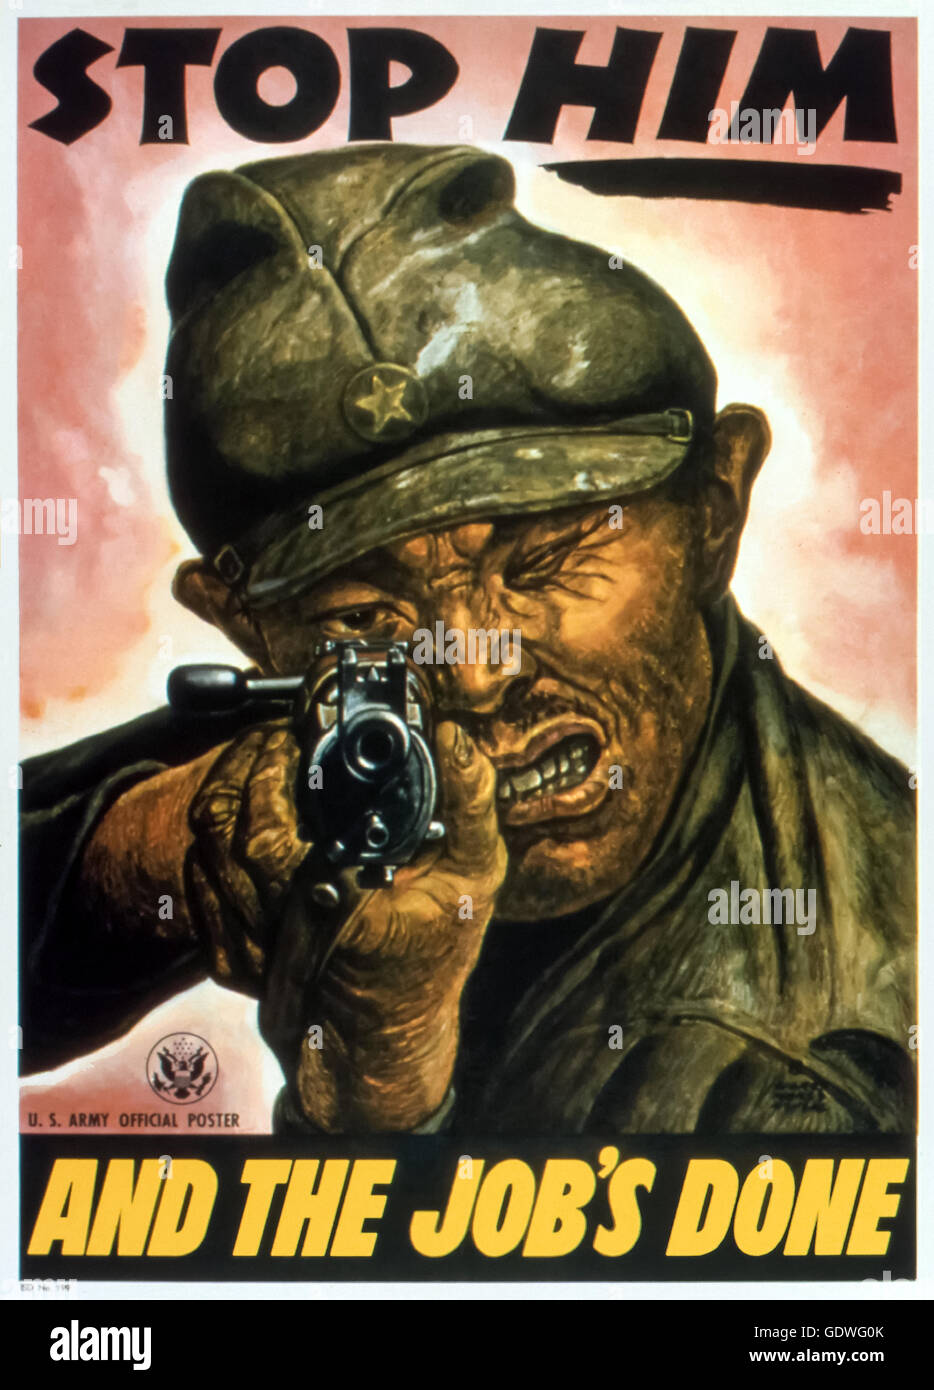 "L'ARRÊTER ET LE TRAVAIL EST FAIT" du gouvernement US World War 2 affiche de propagande anti-japonais publié en 1945 décrit un soldat japonais sans merci à la visée de son fusil Arisaka le spectateur ; artwork par Harry Morse Meyers (1886-1961) publié en 1945. Banque D'Images